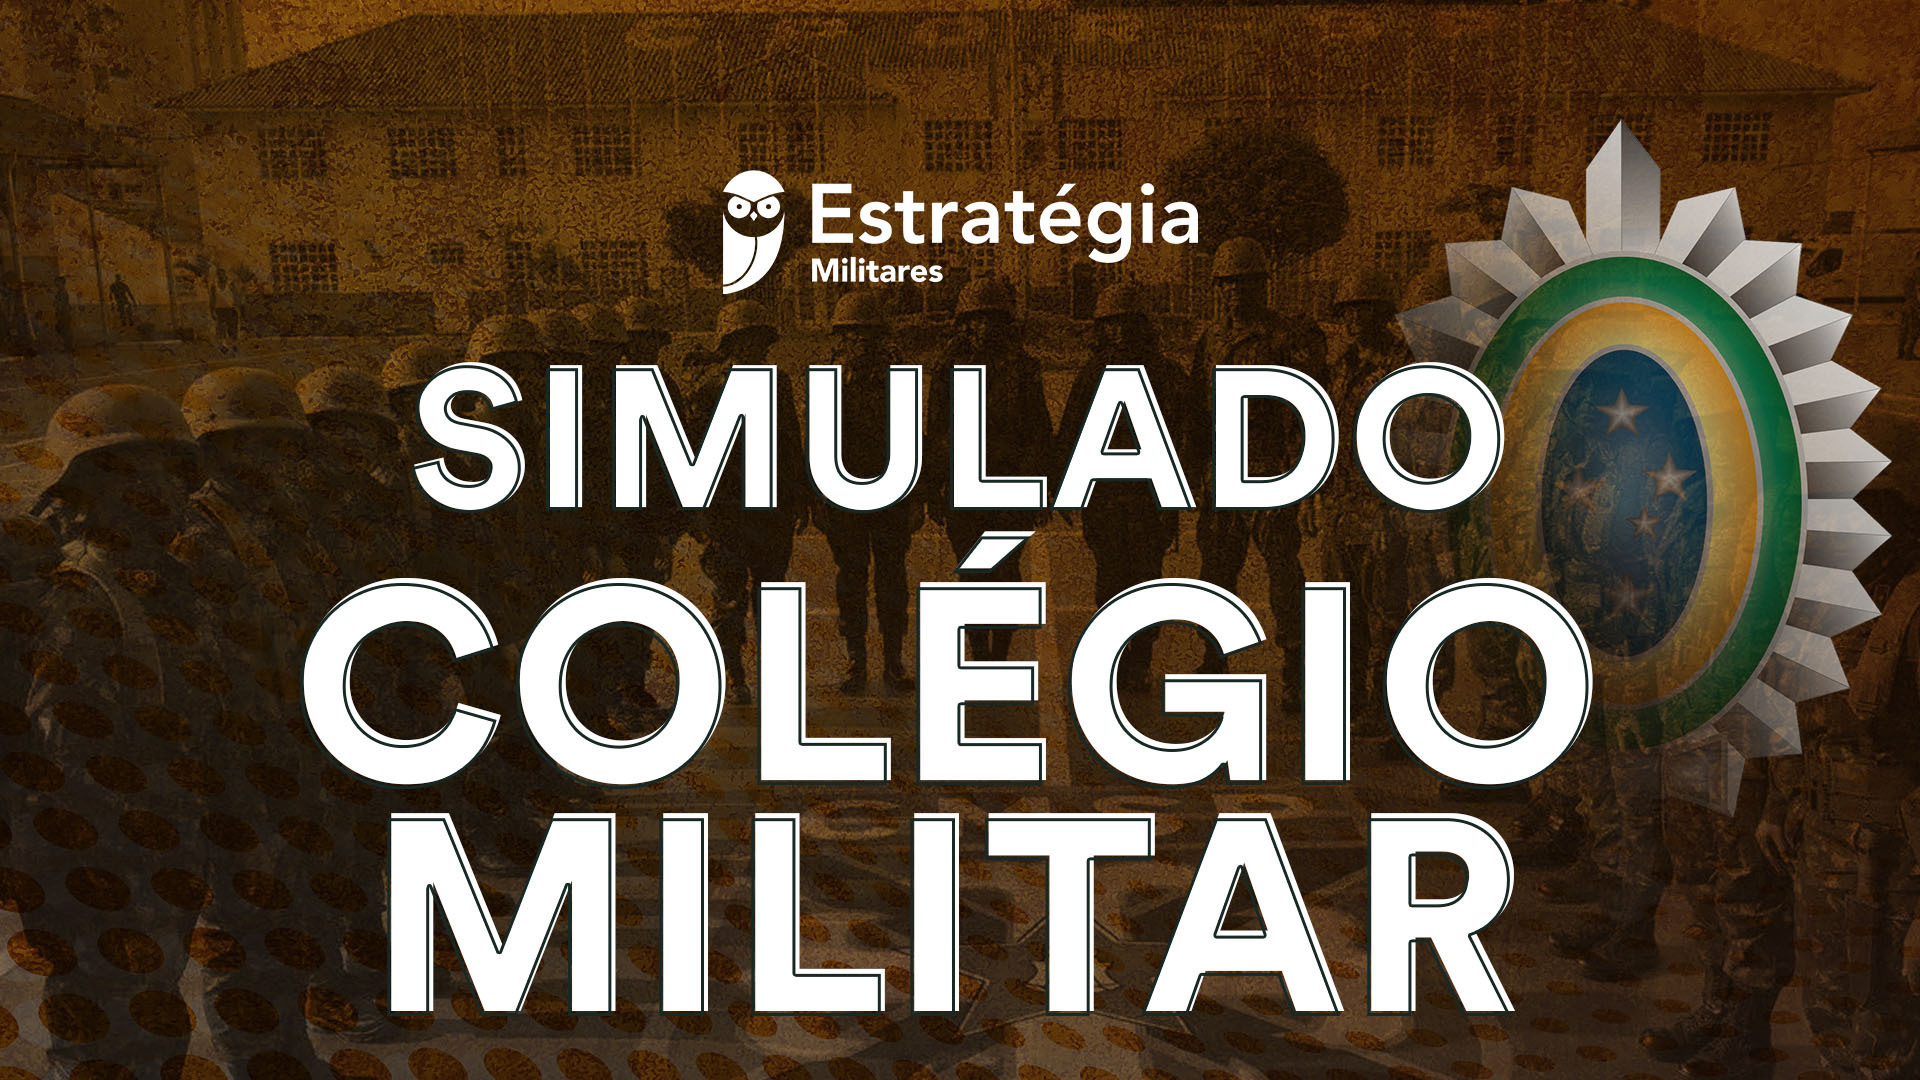 Simulado Colégio Militar 6° e 1° ANO: 2° edição de outubro aconteceu no dia 23